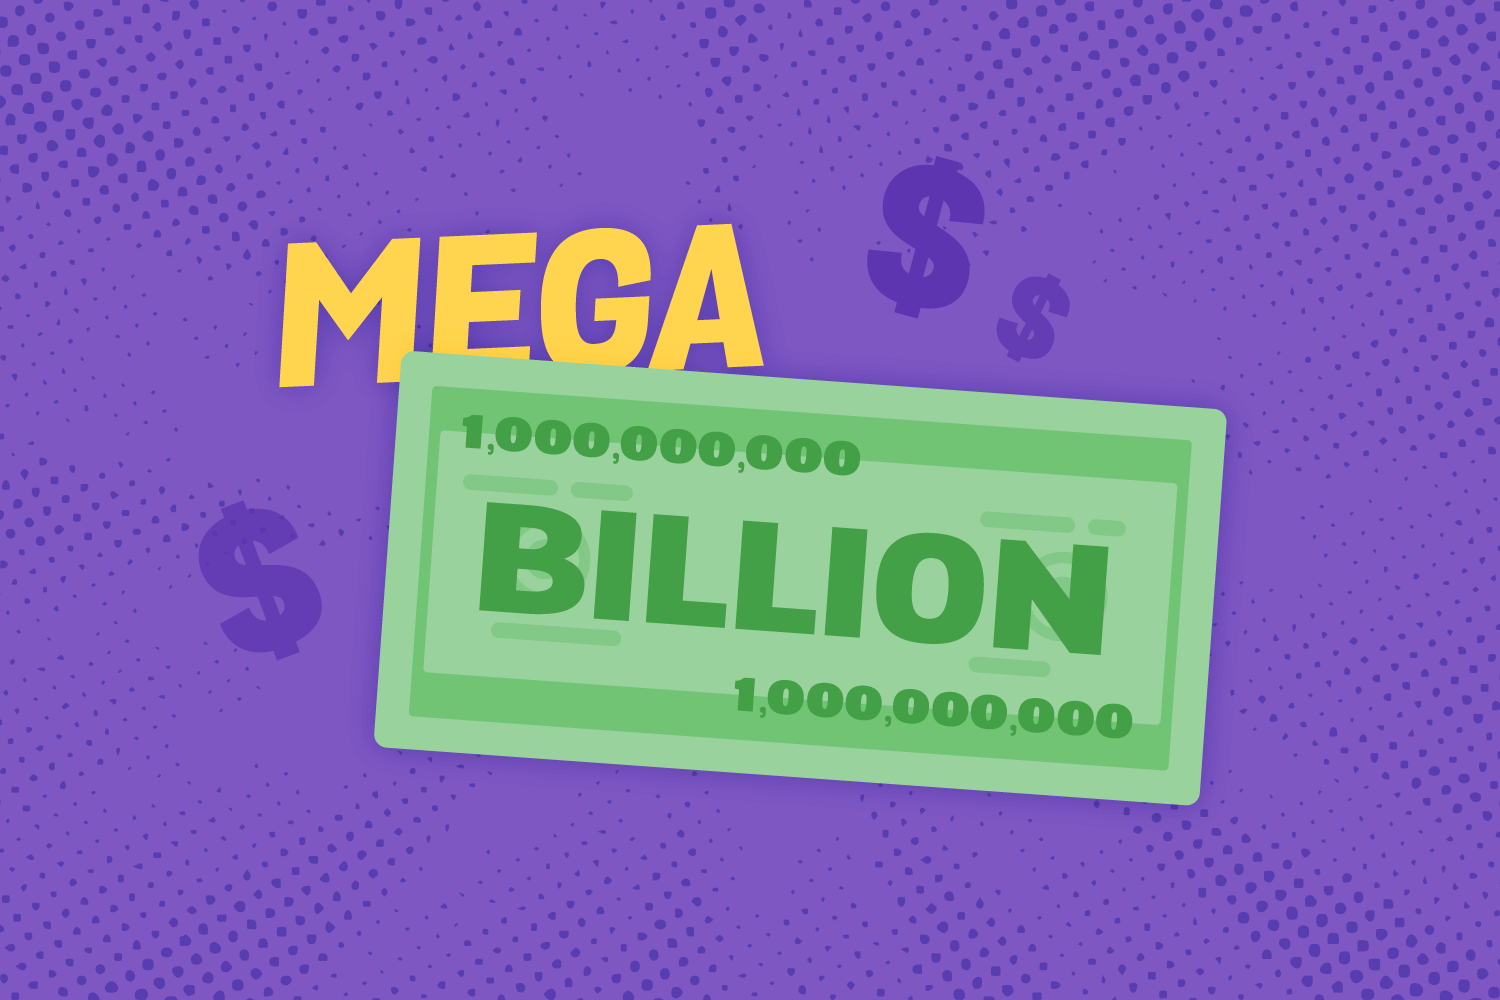 Record Mega Millions Prize: $1,100,000,000!